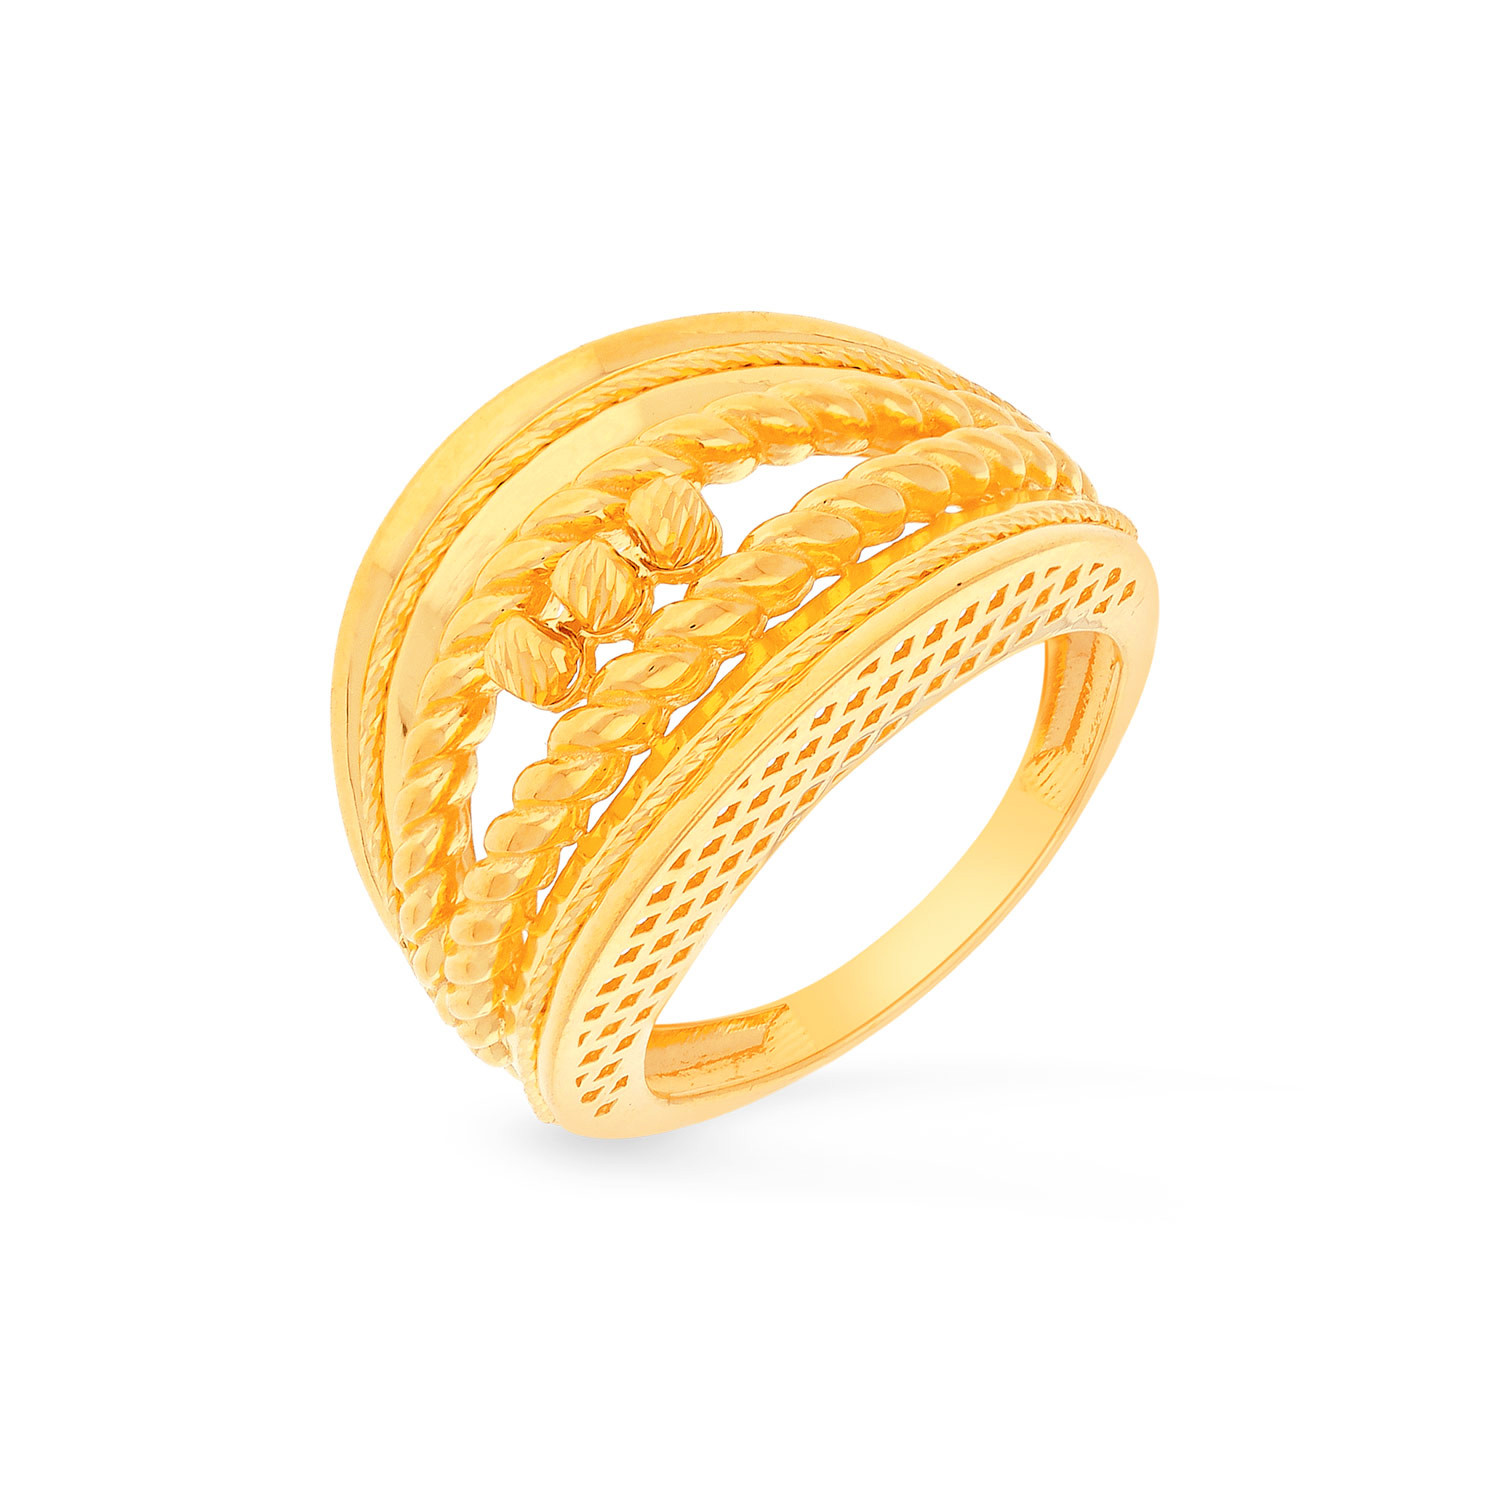 Round Women's 20g Women Diamond Engagement Ring, Size: 9.5 mm(dia) at Rs  150000 in Mumbai